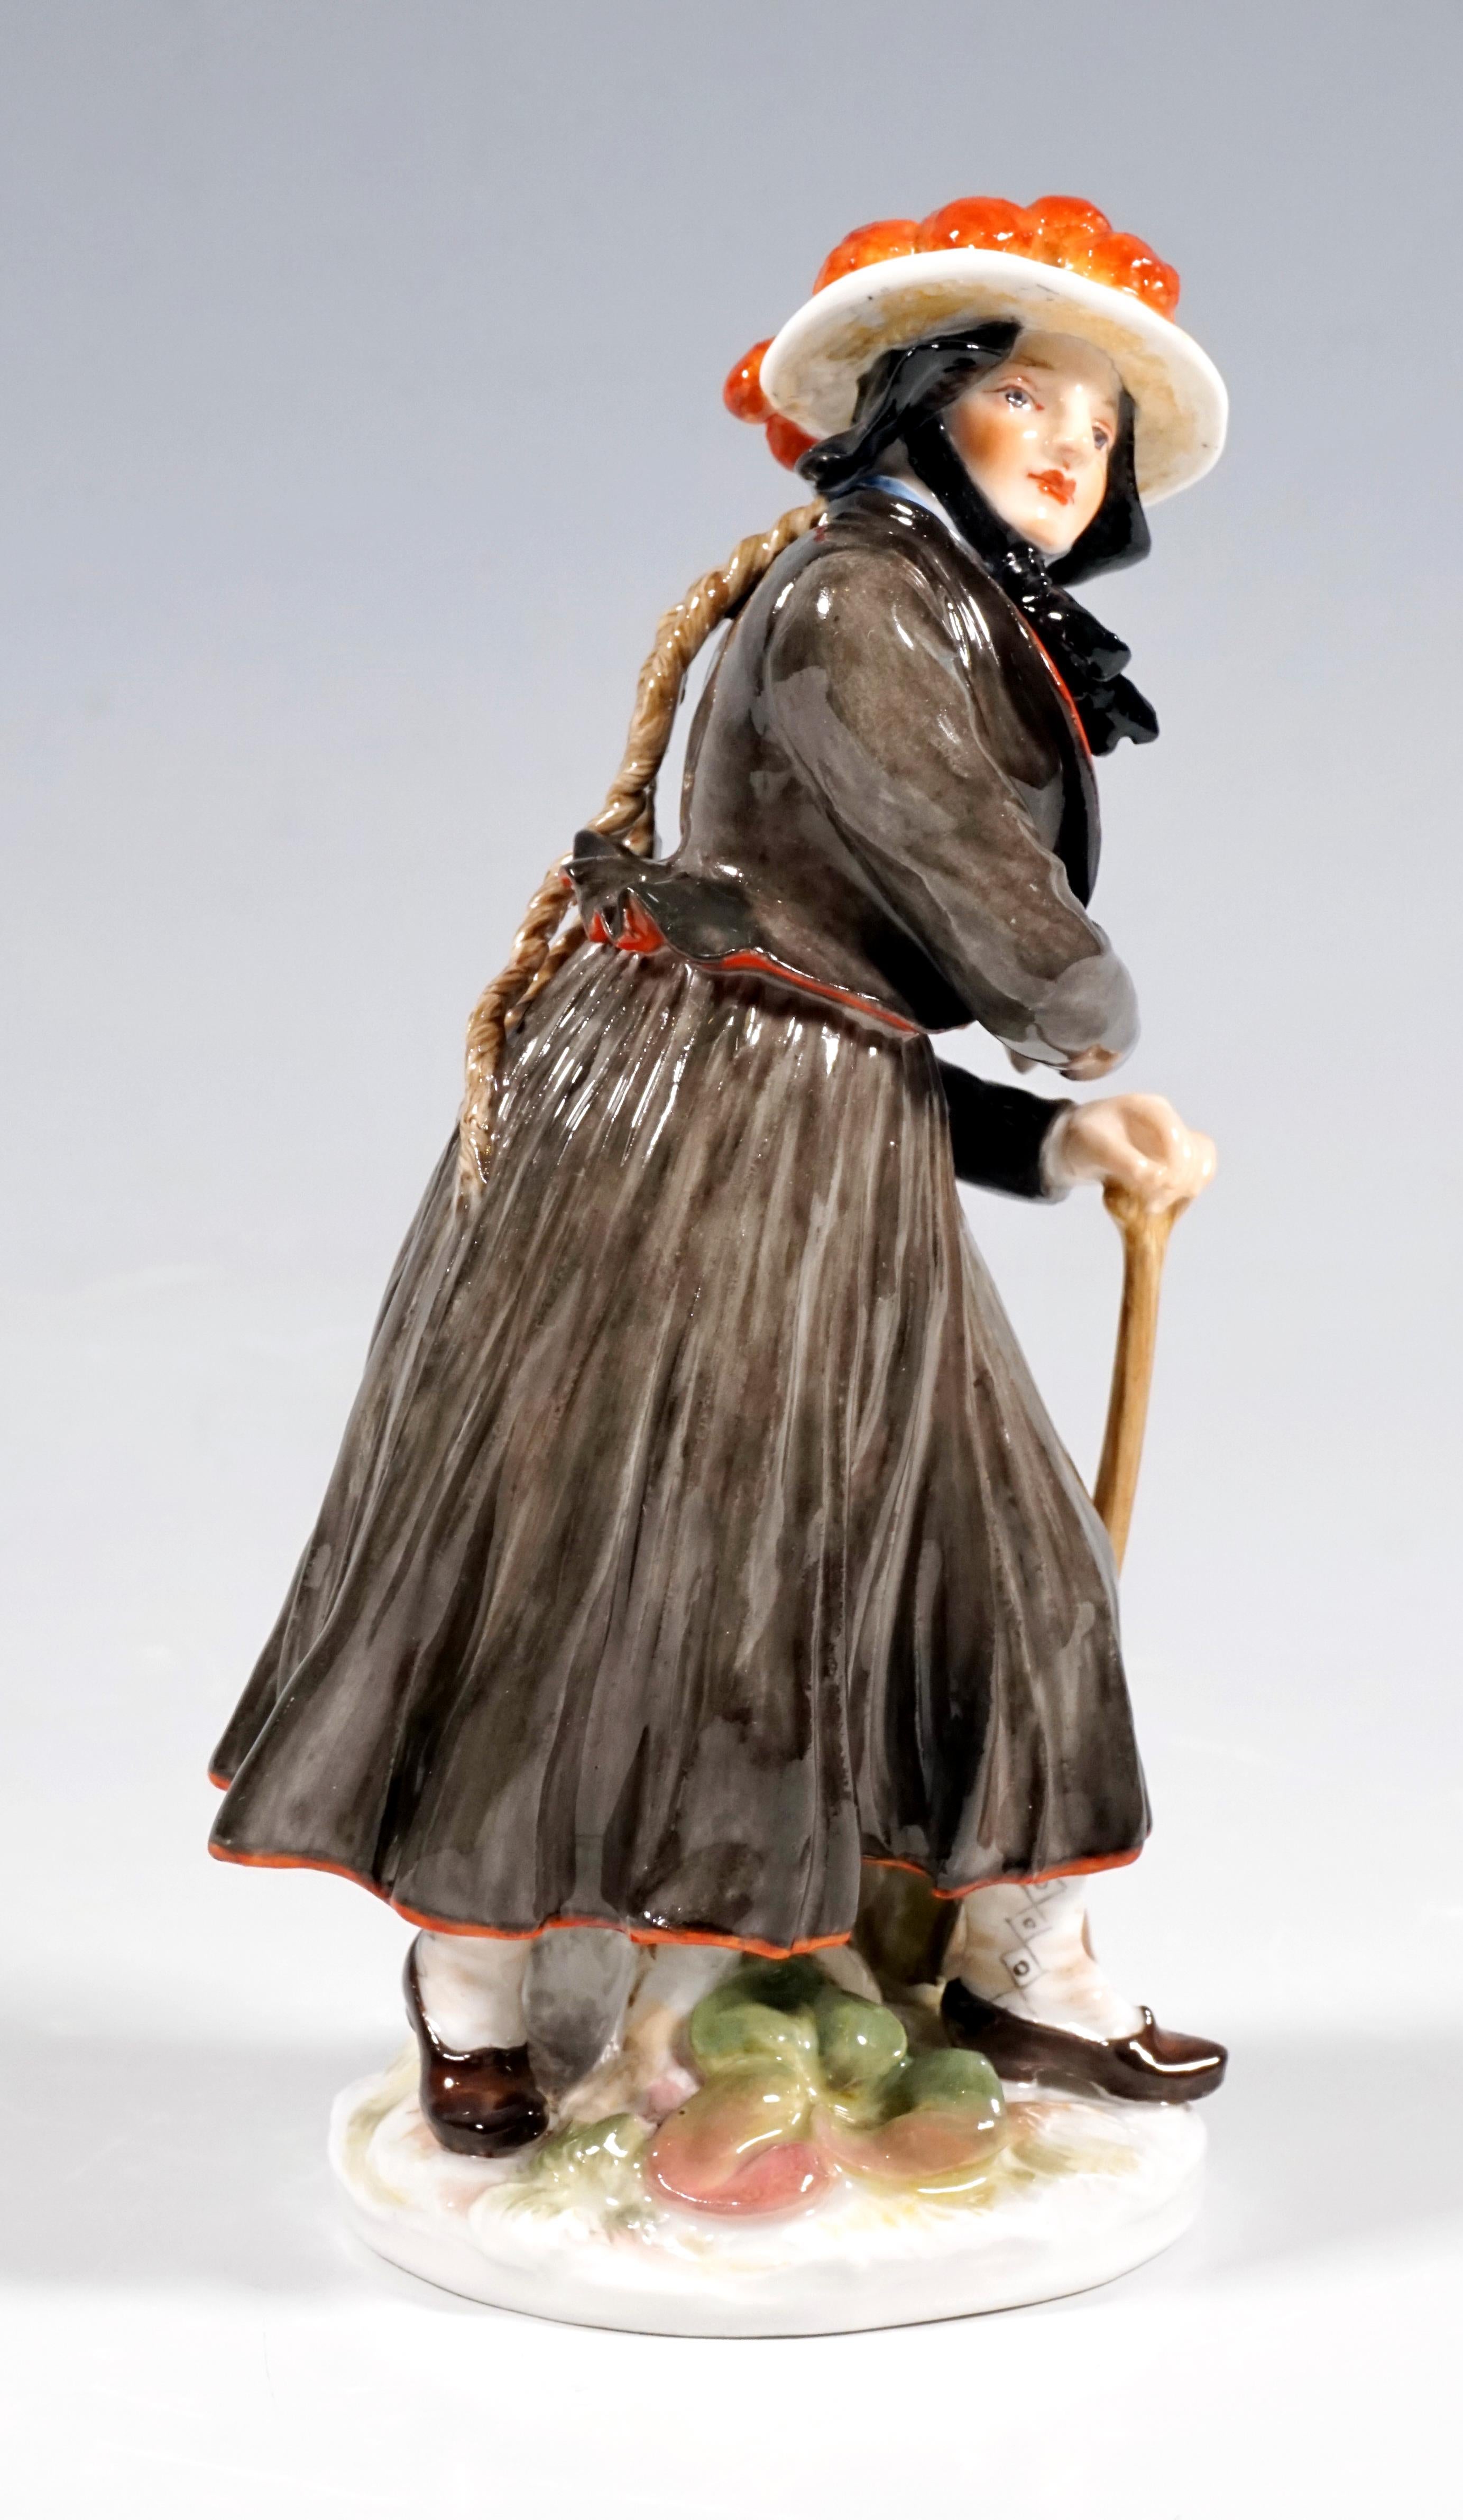 Darstellung einer Bäuerin in badischer Tracht:
Zu der schwarzen Tracht, die aus einem langen Rock und einer maßgeschneiderten Jacke besteht, trägt die junge Frau den auffälligen 